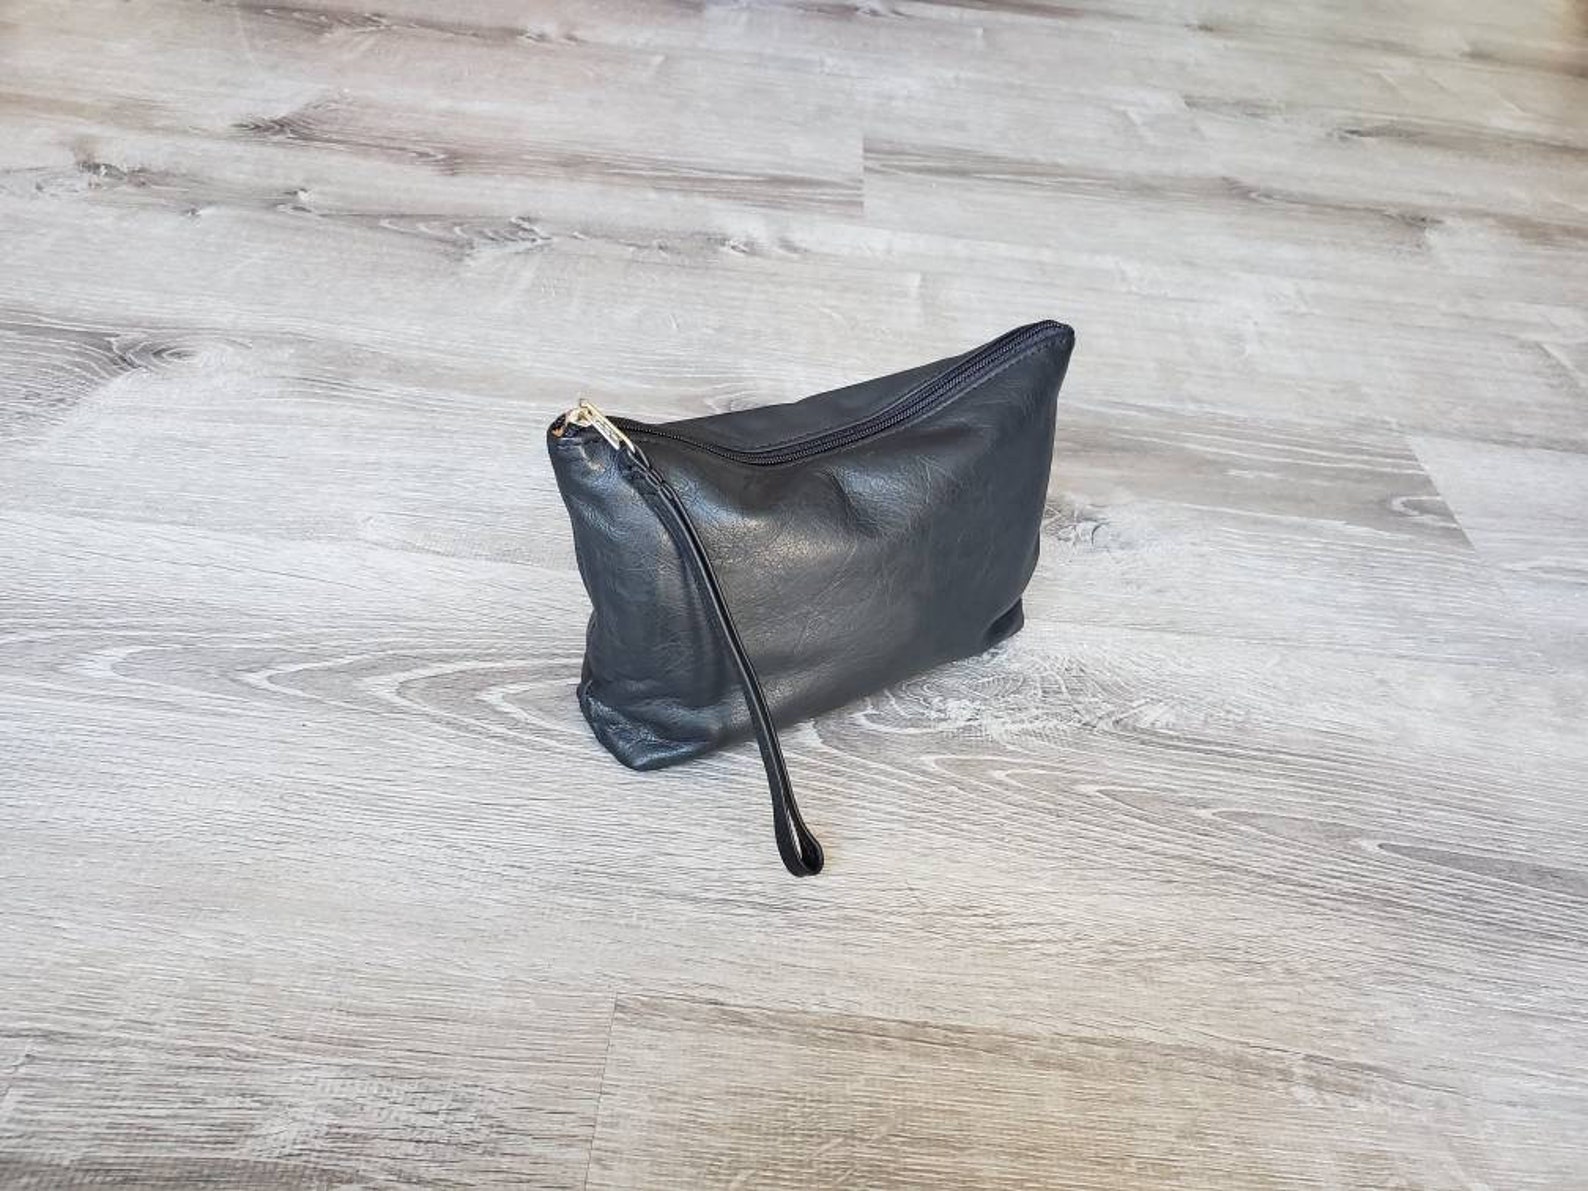 Black Leather Clutch Bag W/ Wrist Strap Fashion Purse Small | Etsy